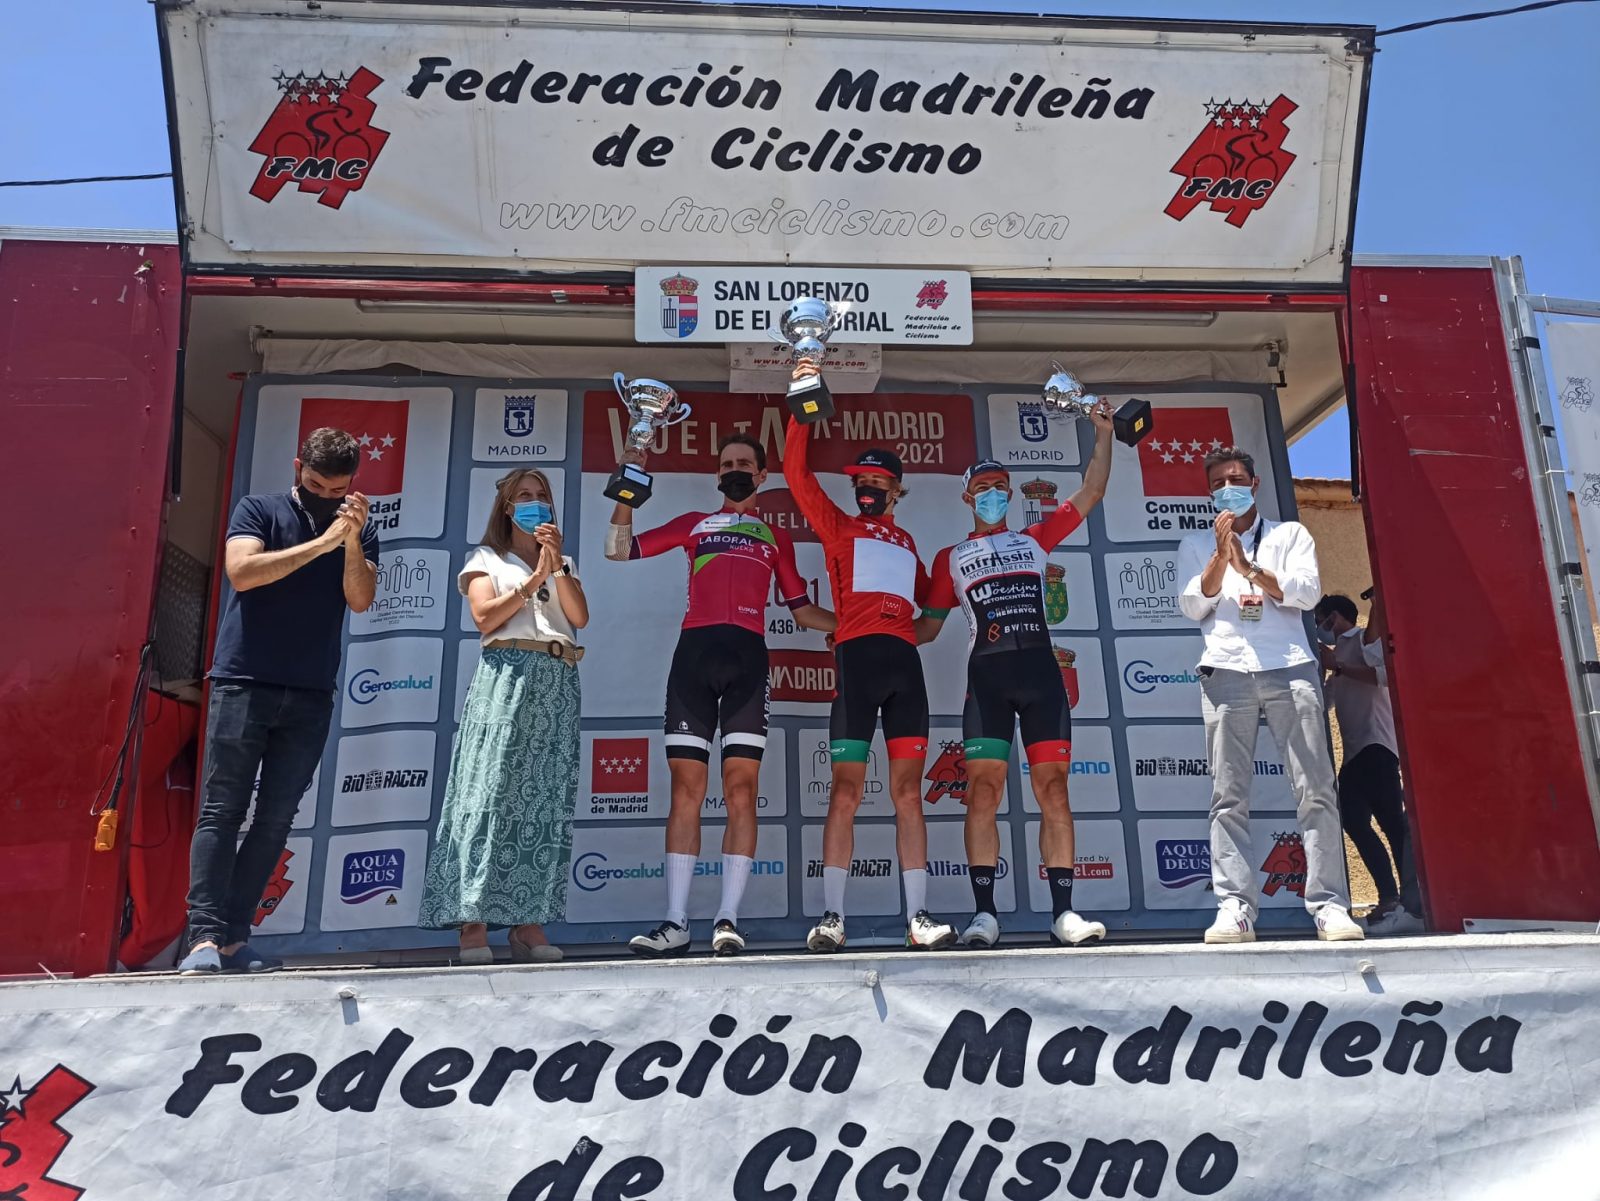 Podium de la Vuelta a Madrid sub-23 con Maris, Isasa y Claeys